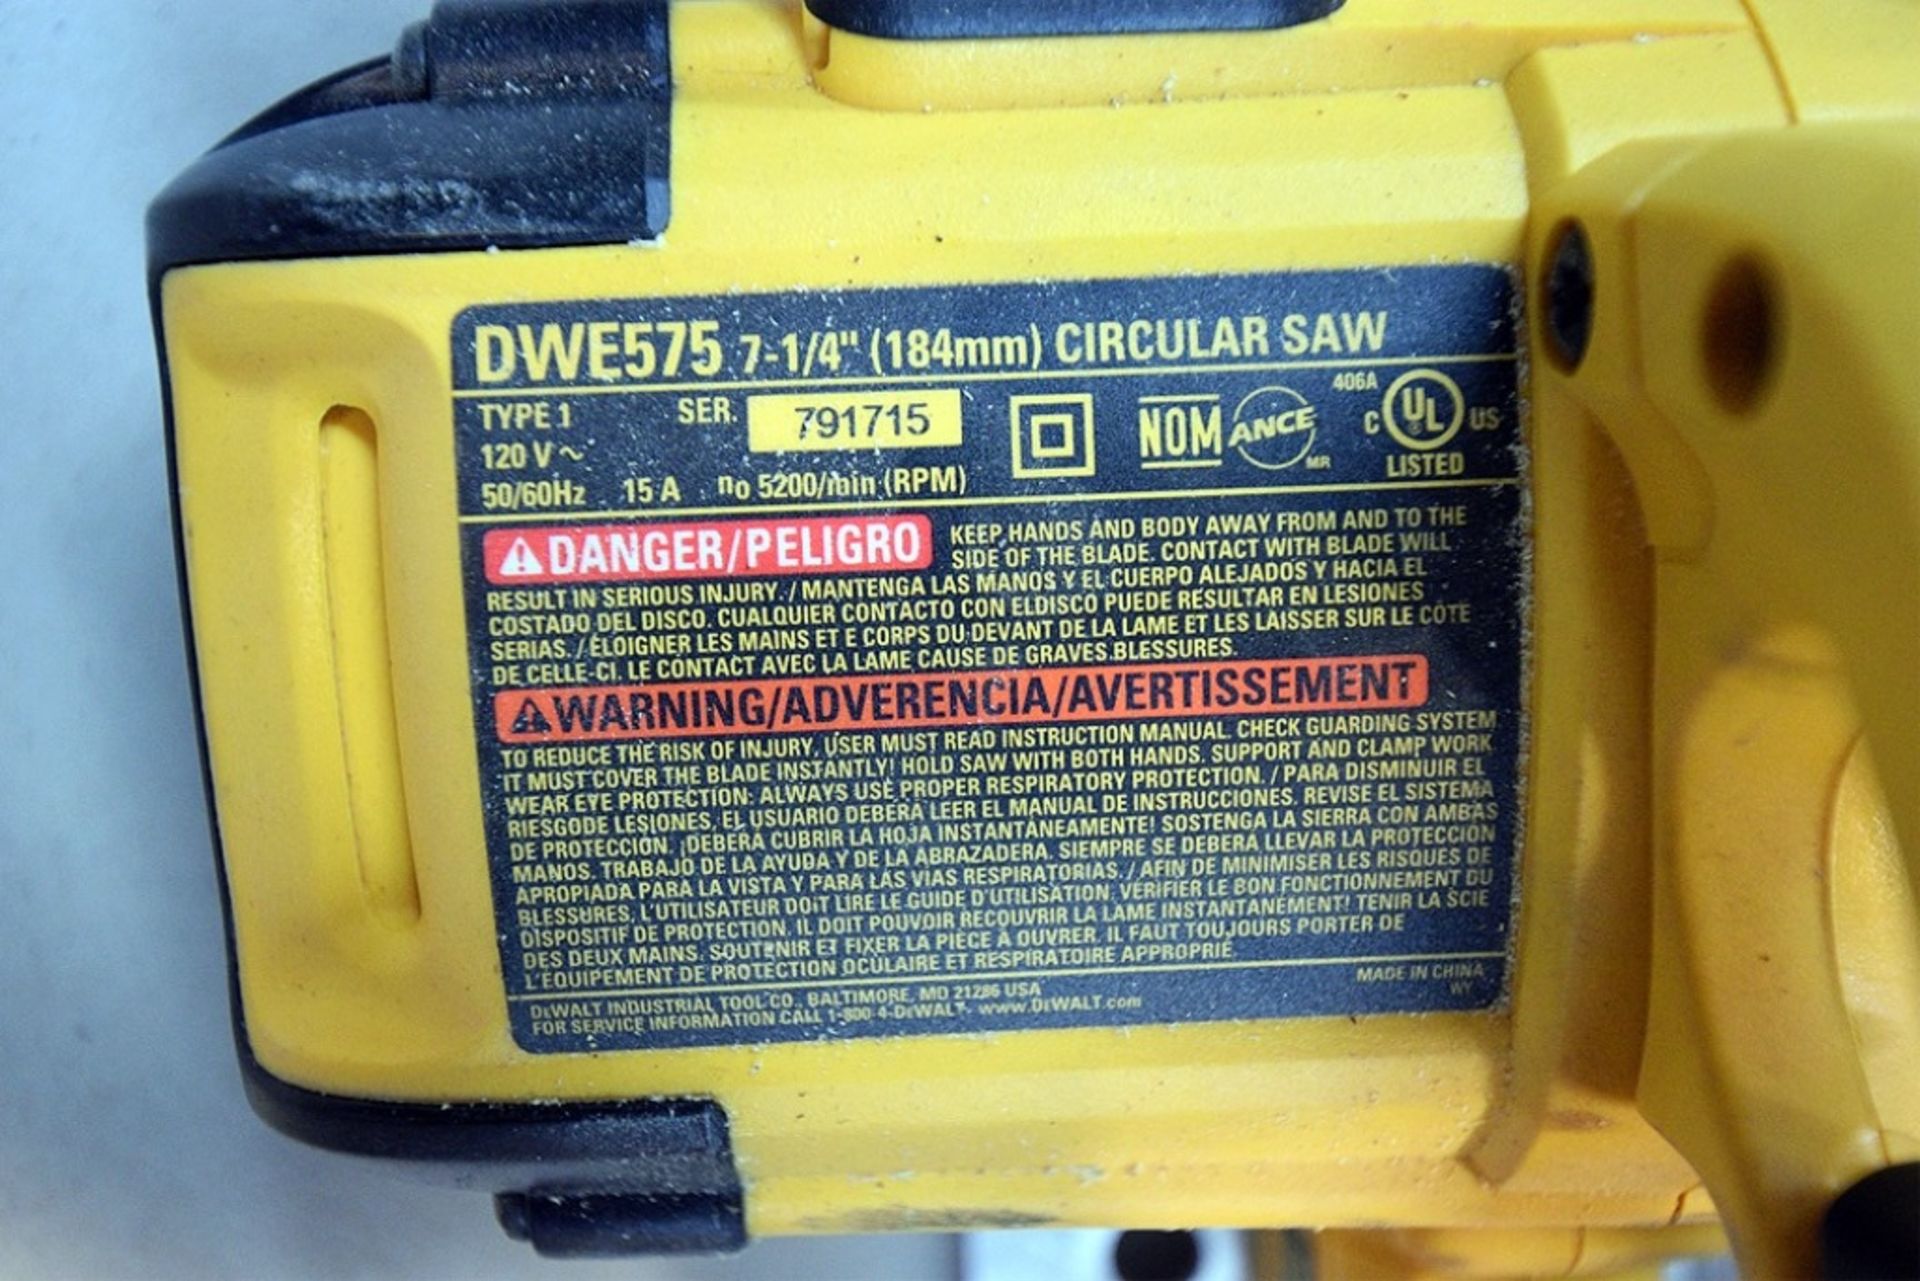 DeWalt DWE575 7-1/4" Corded Circular Saw - Image 2 of 2